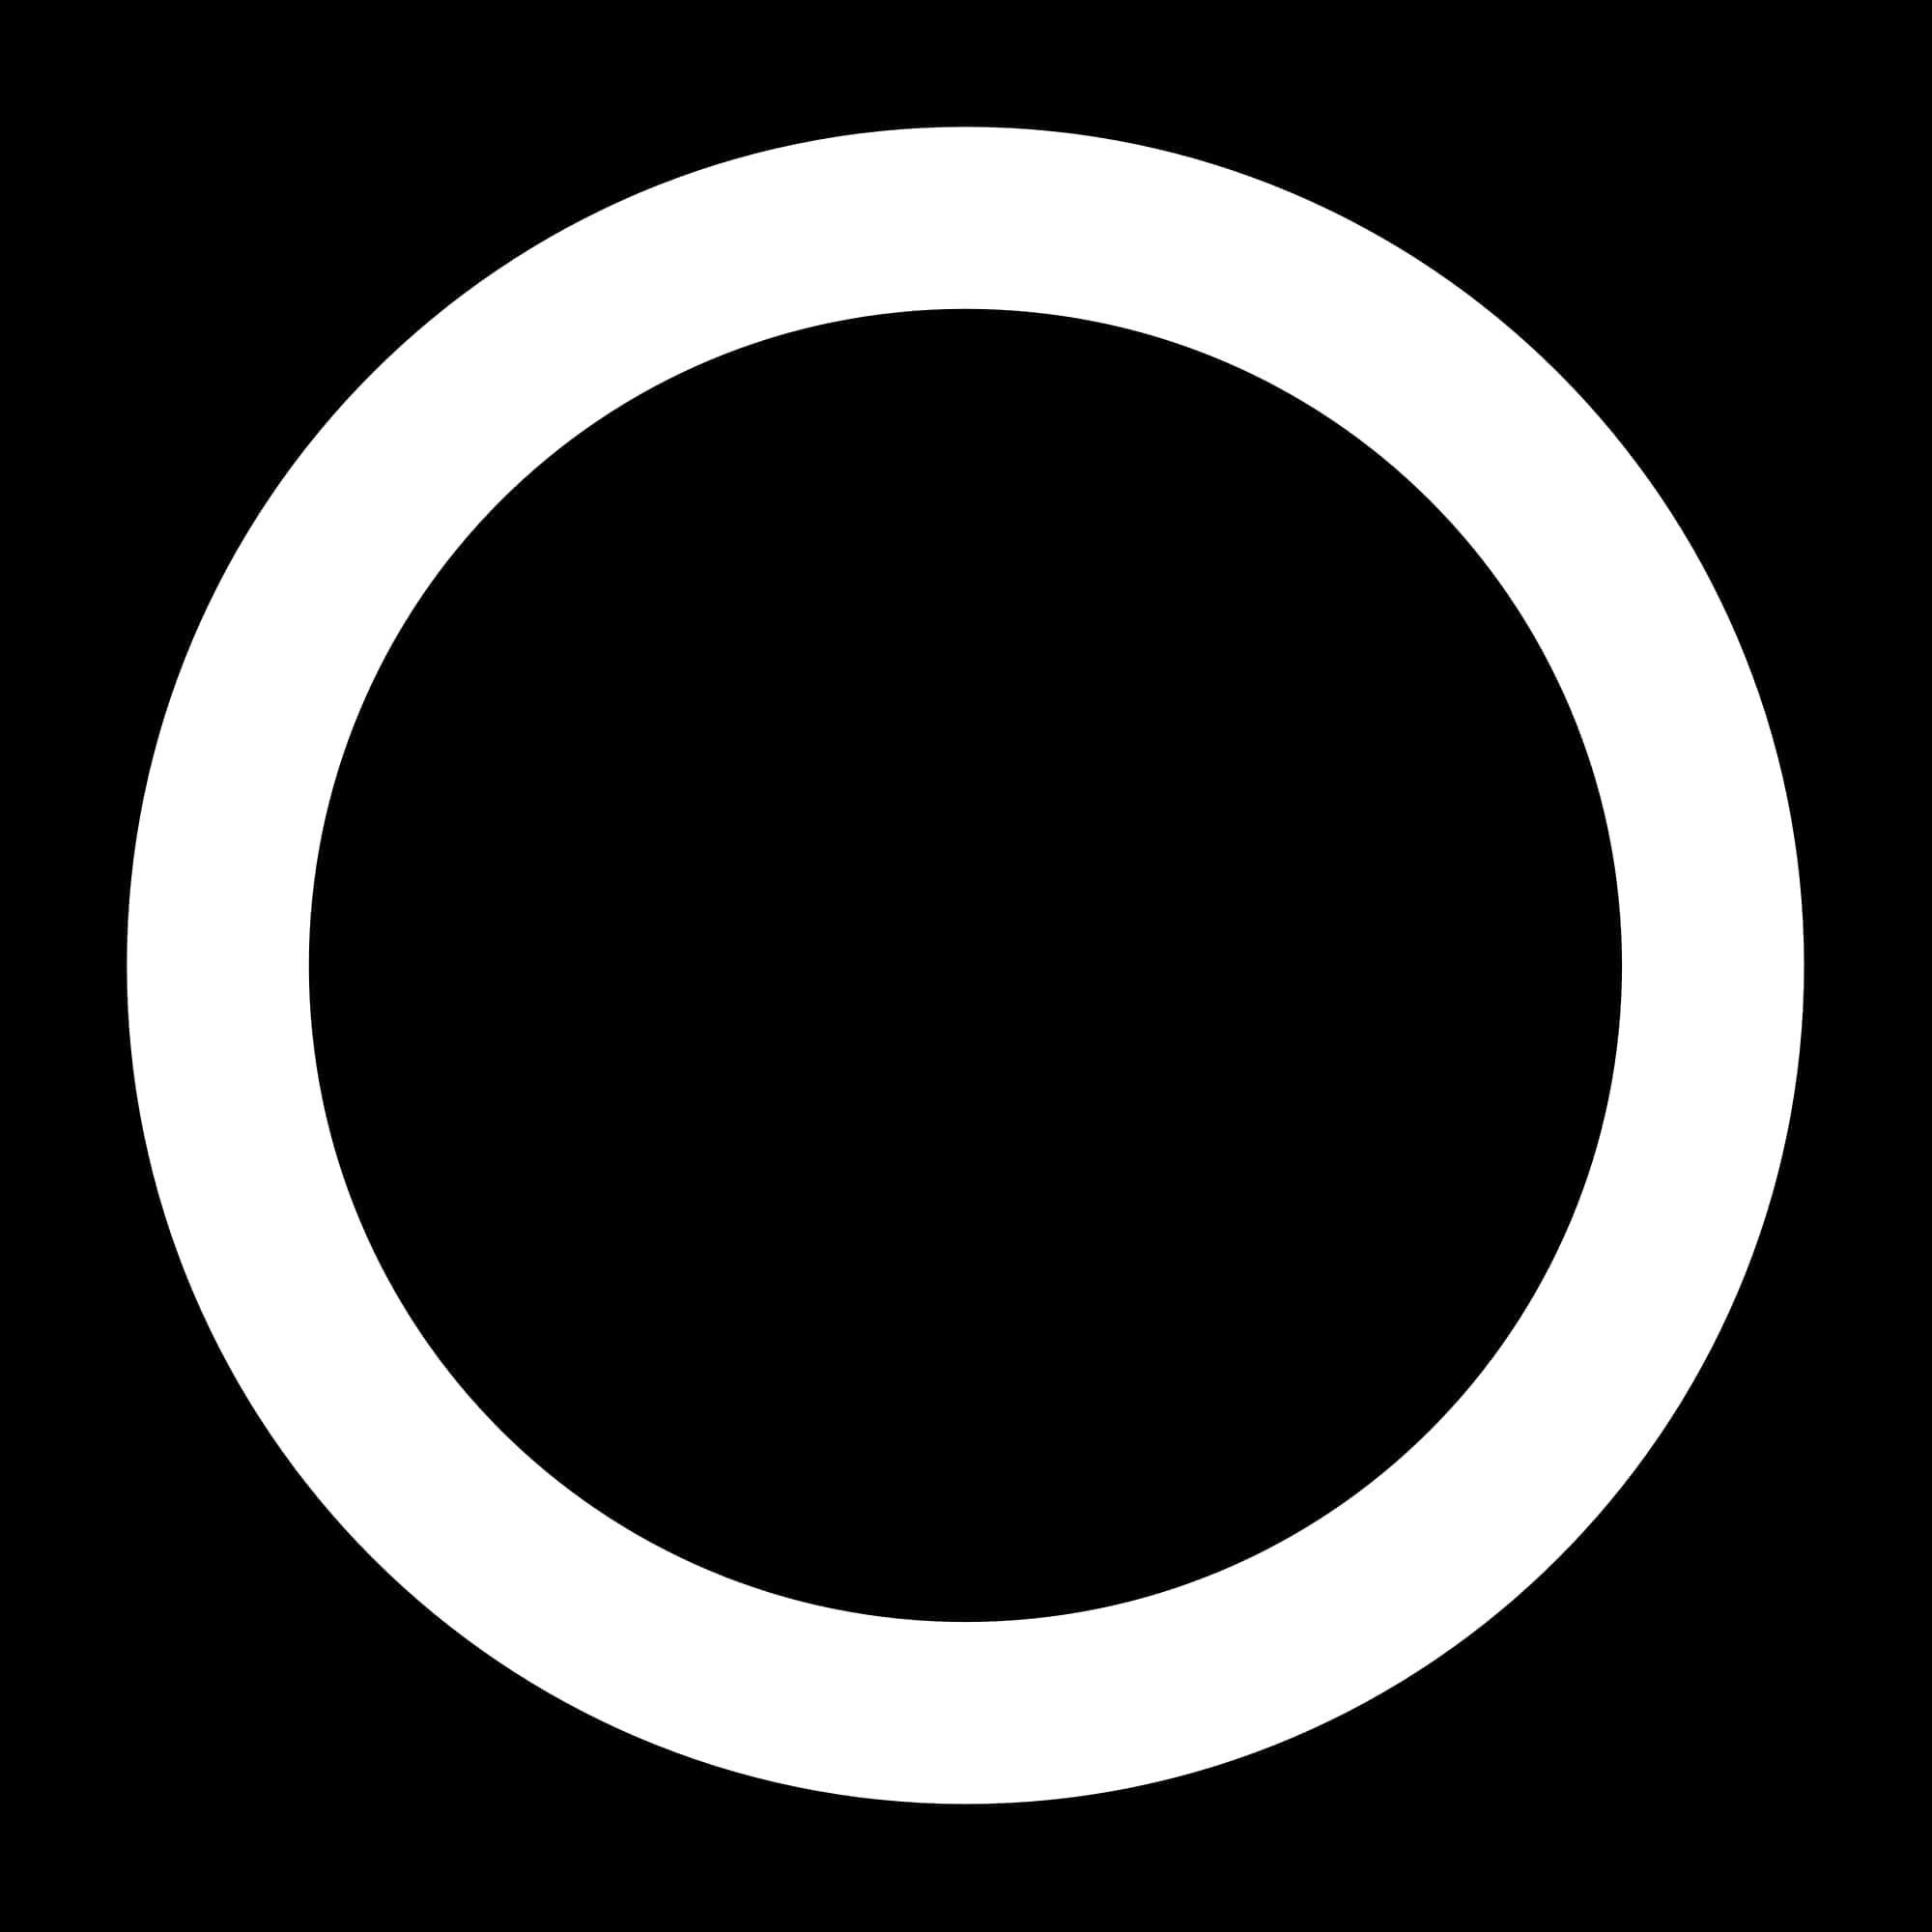 Black Circle With White Circle